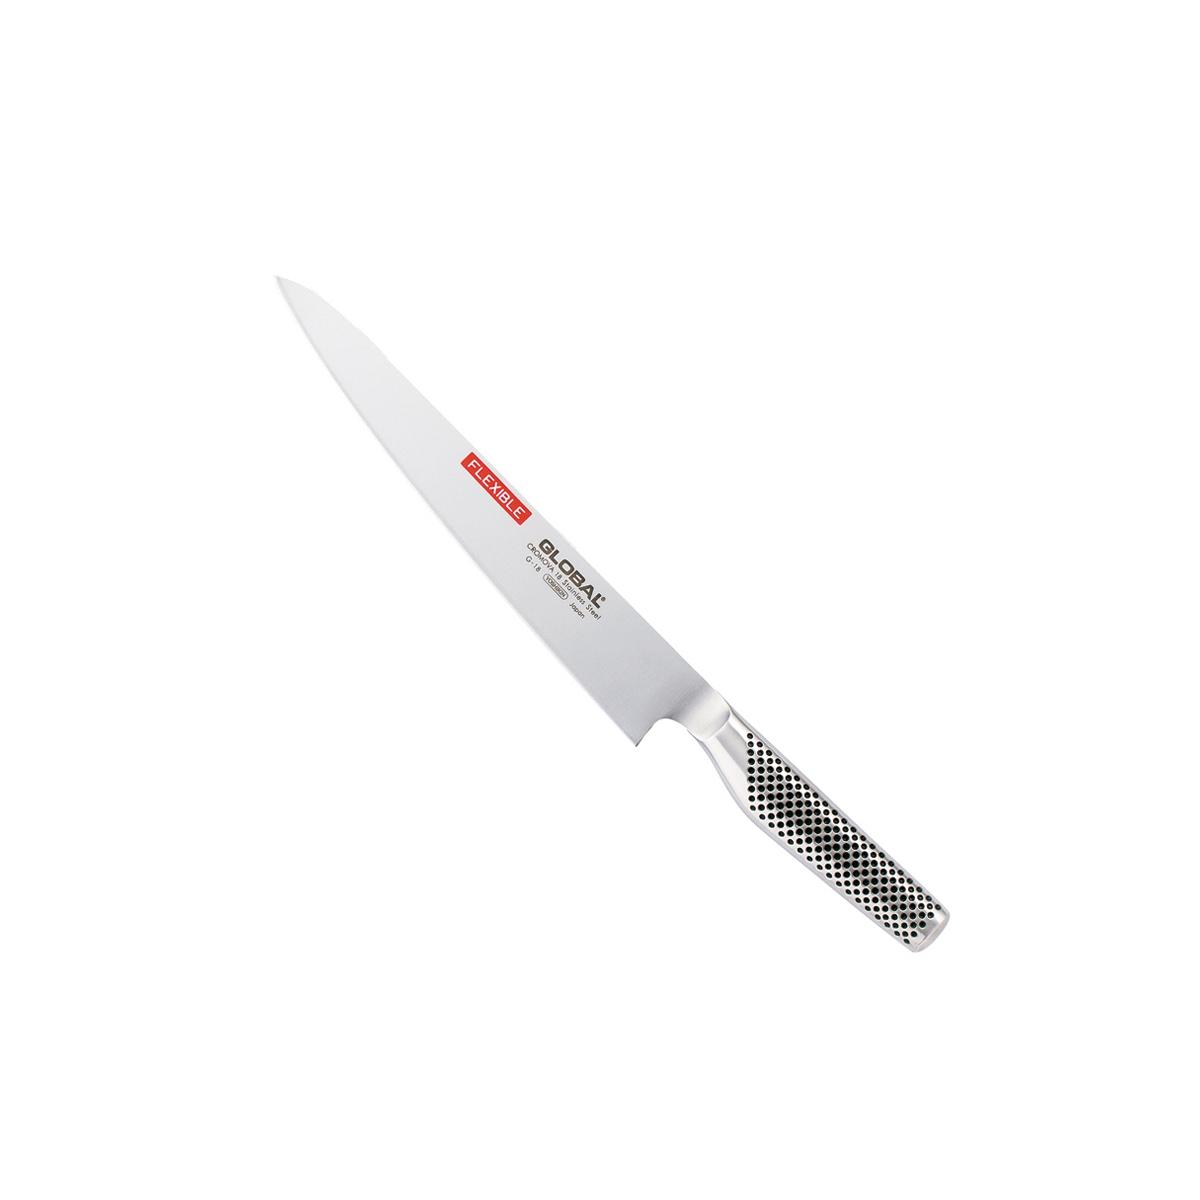 G-18 coltello per filettare flessibile cm 24 - 37